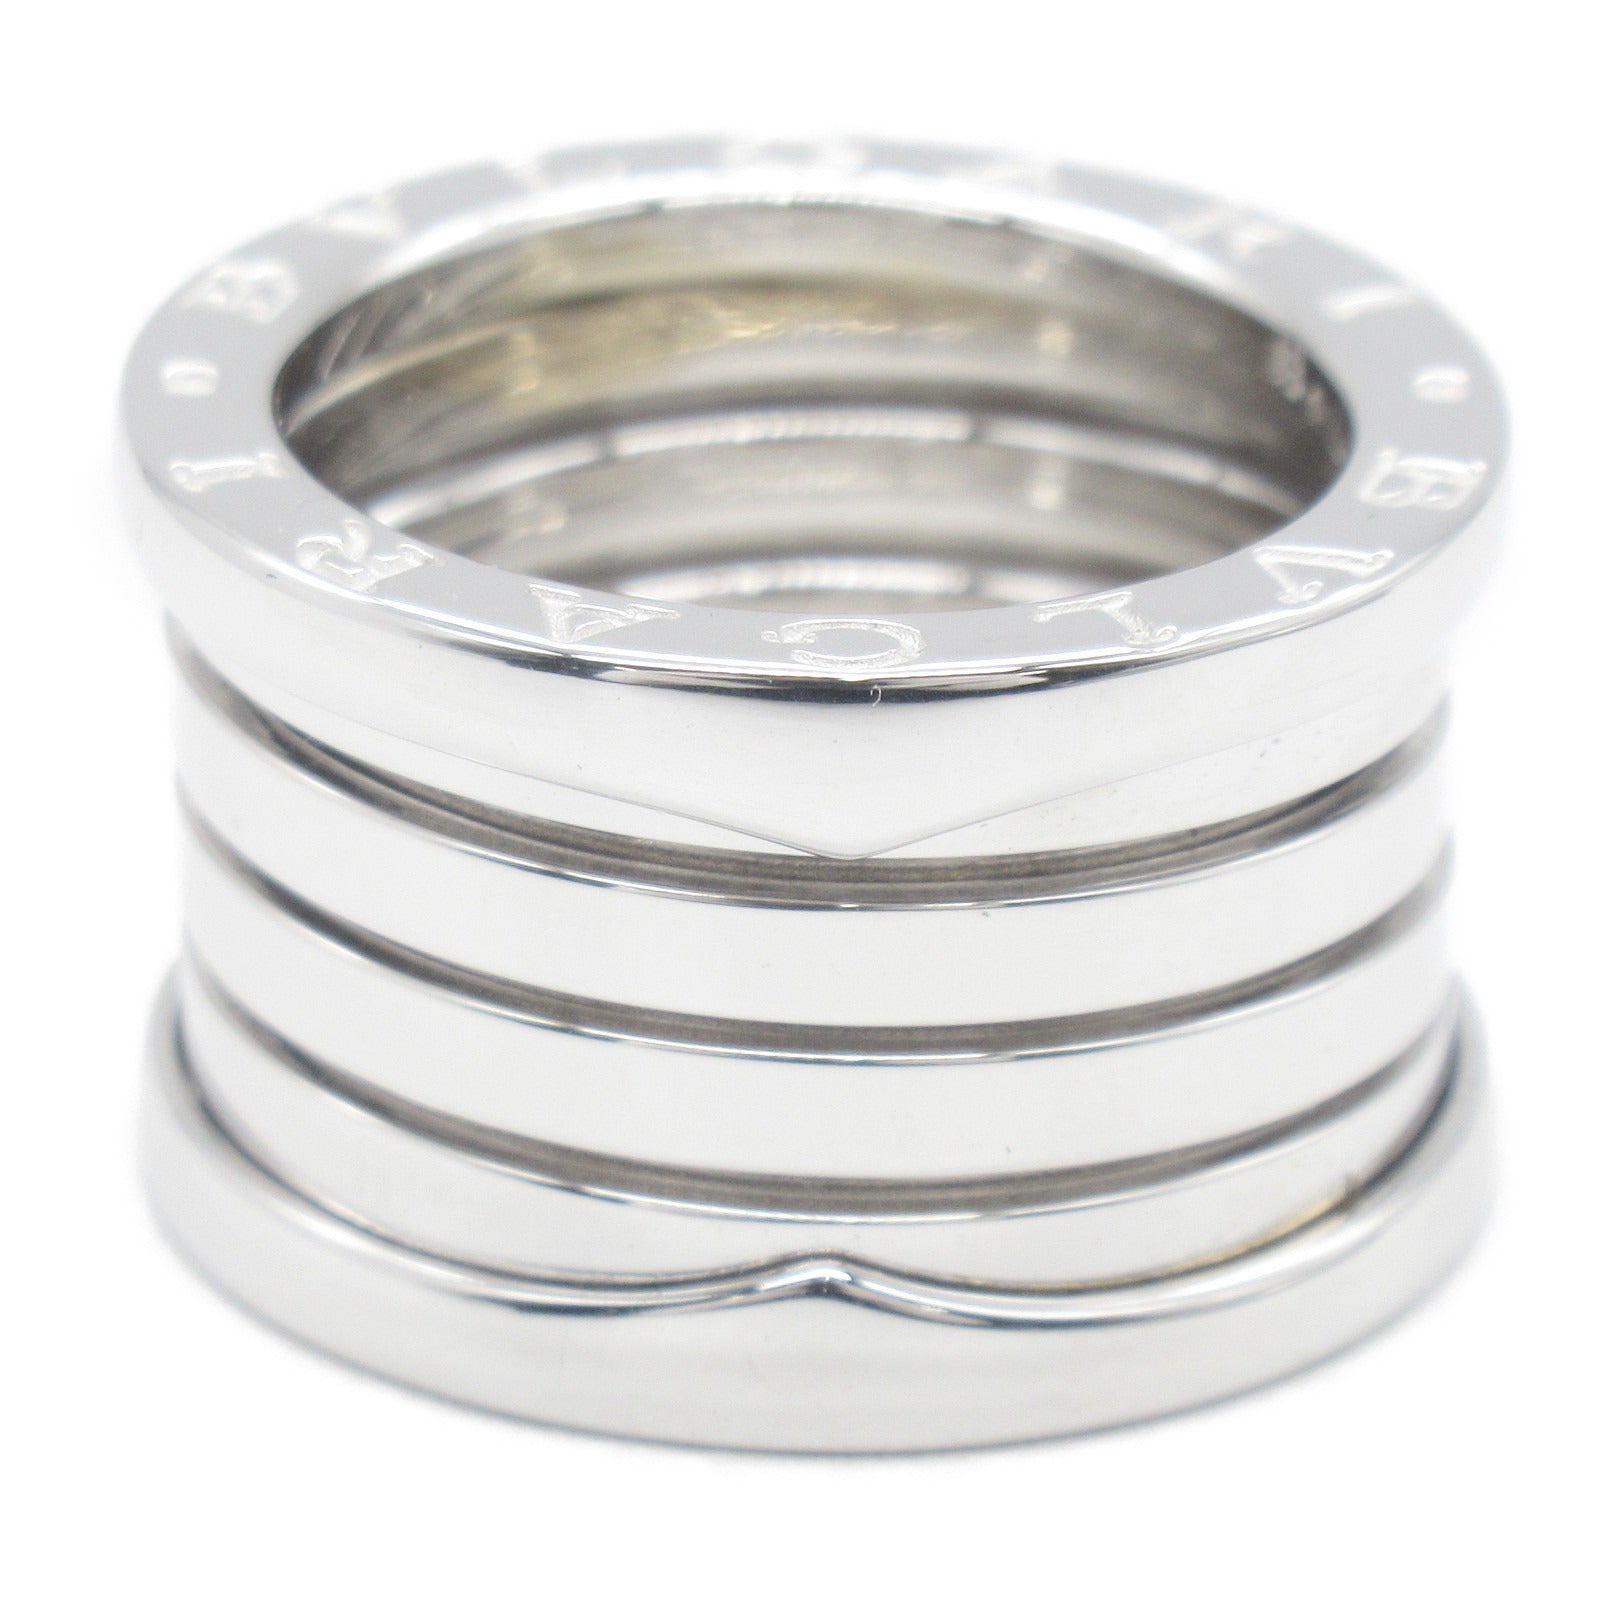 Bulgari BVLGARI B-zero1 Beezero One 5 Band Ring Ring Ring Ring Jewelry K18WG (White G)   Silver